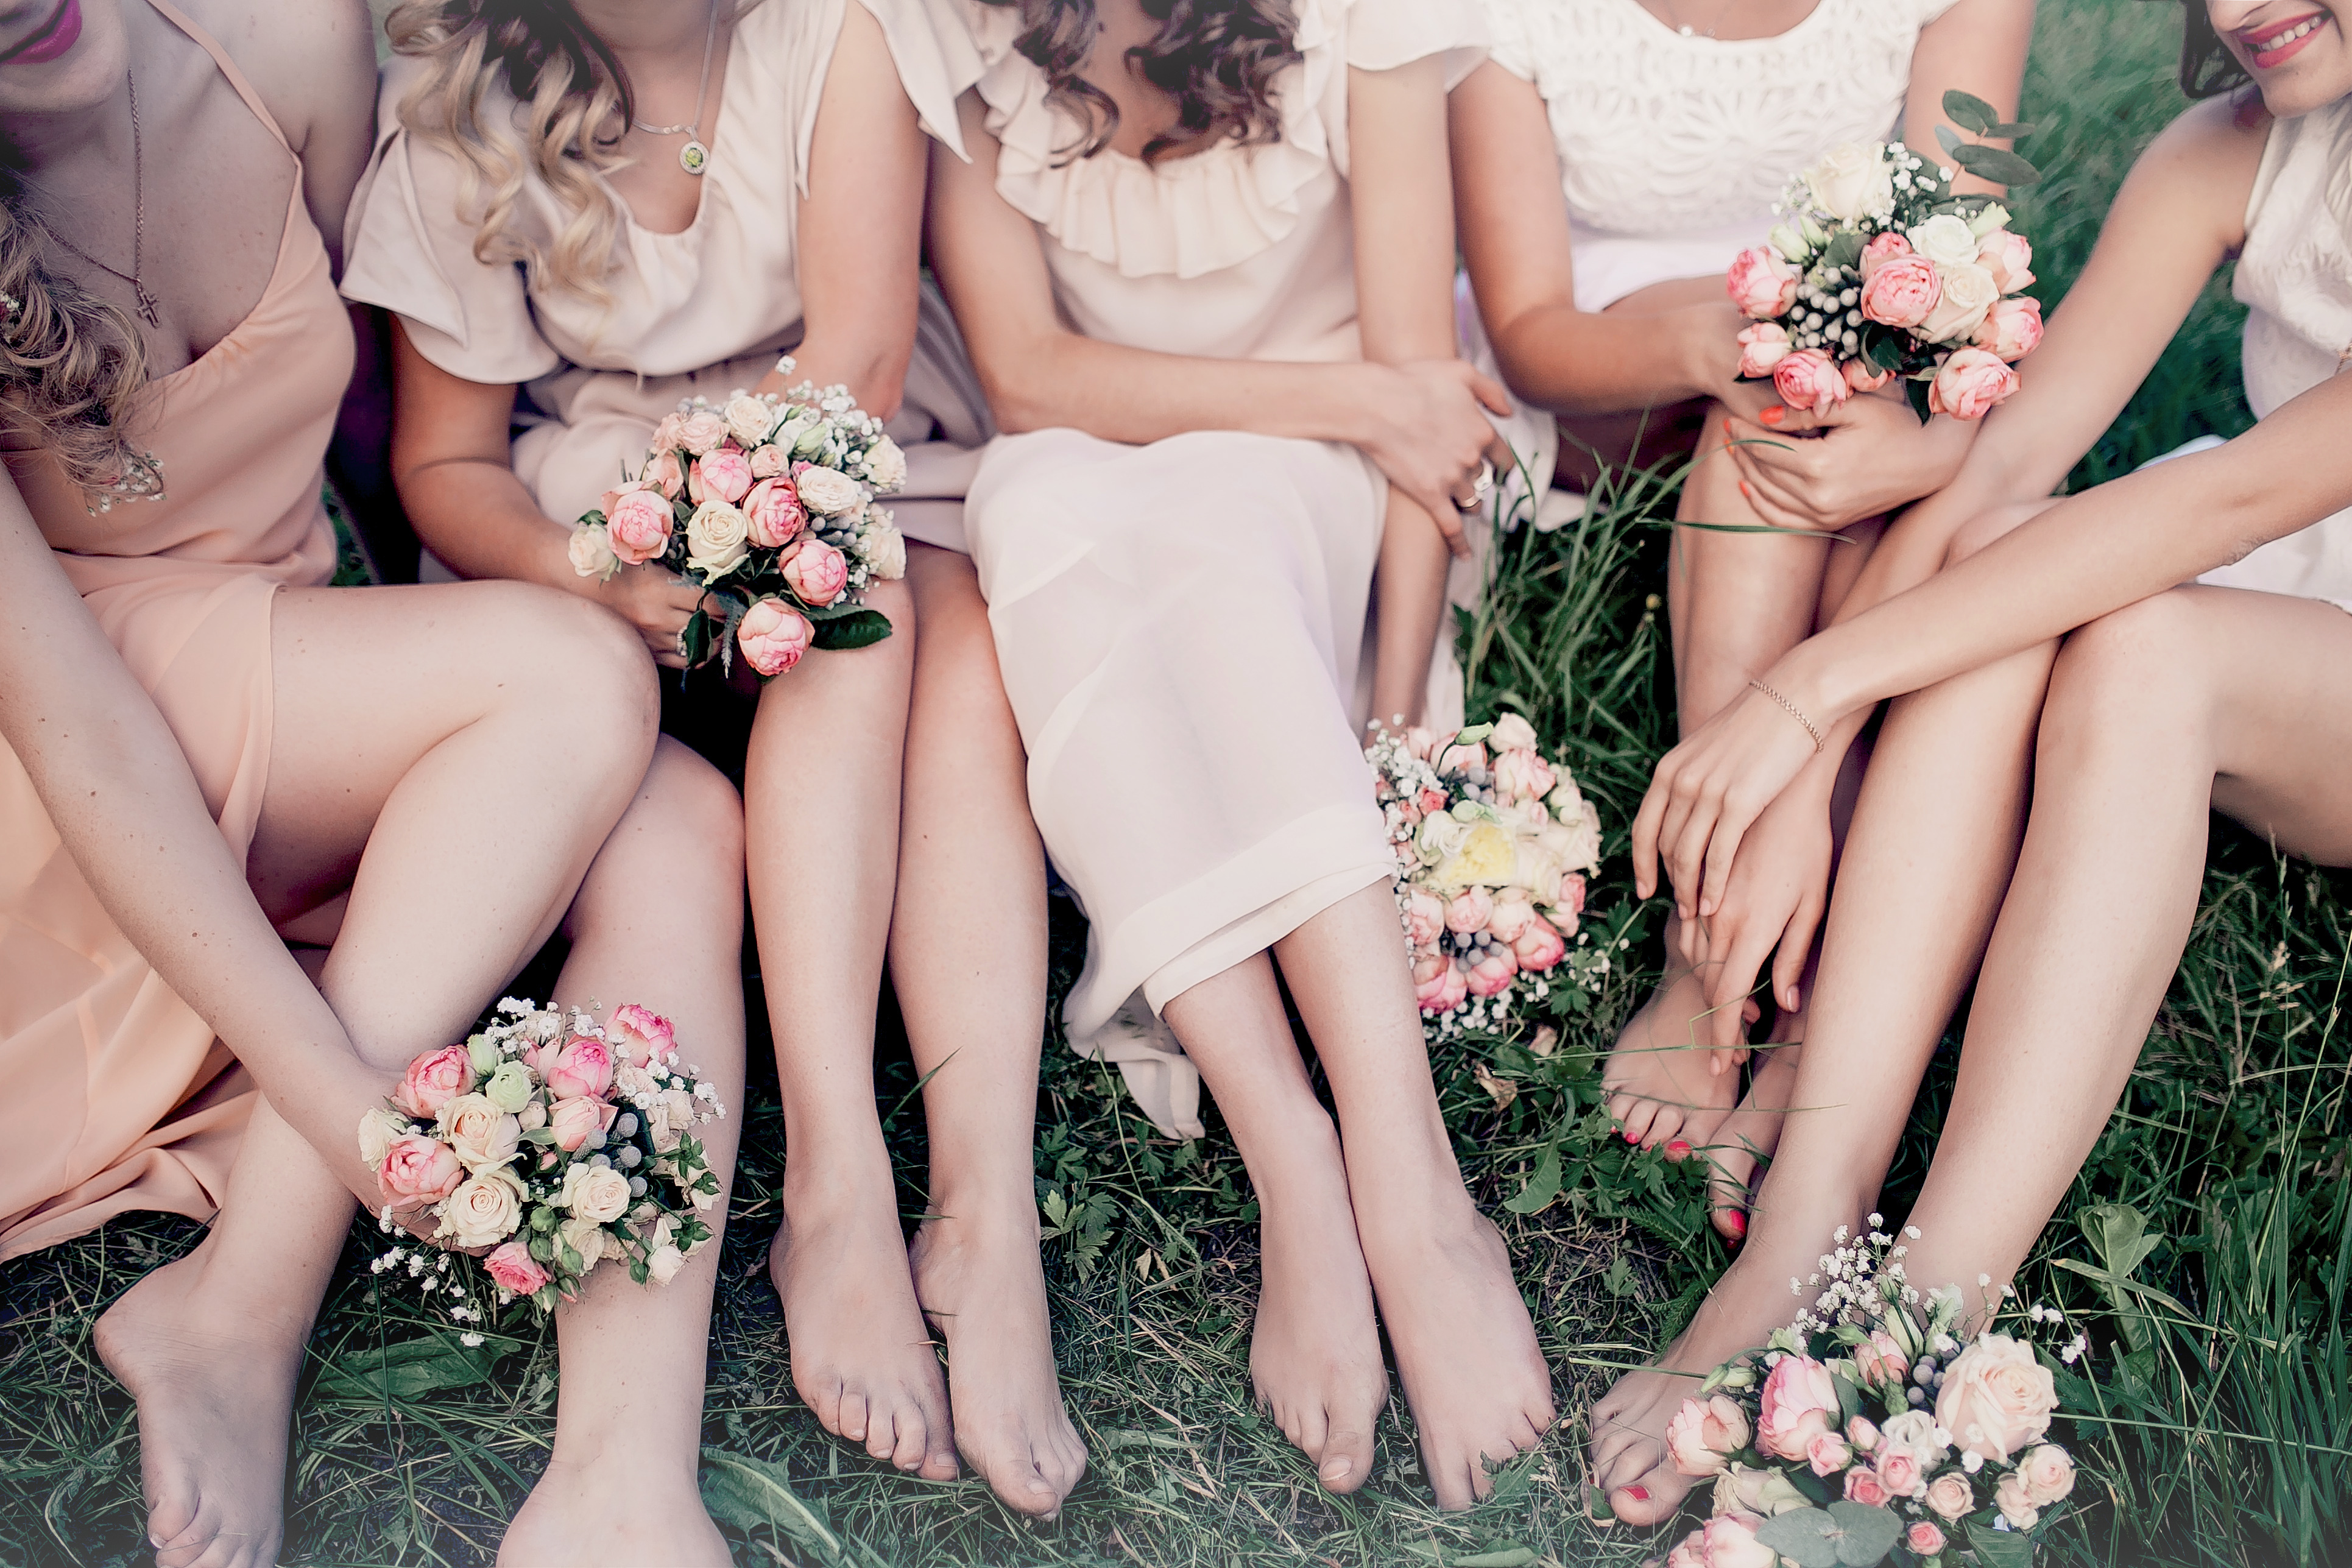 Mujeres sentadas juntas | Fuente: Shutterstock